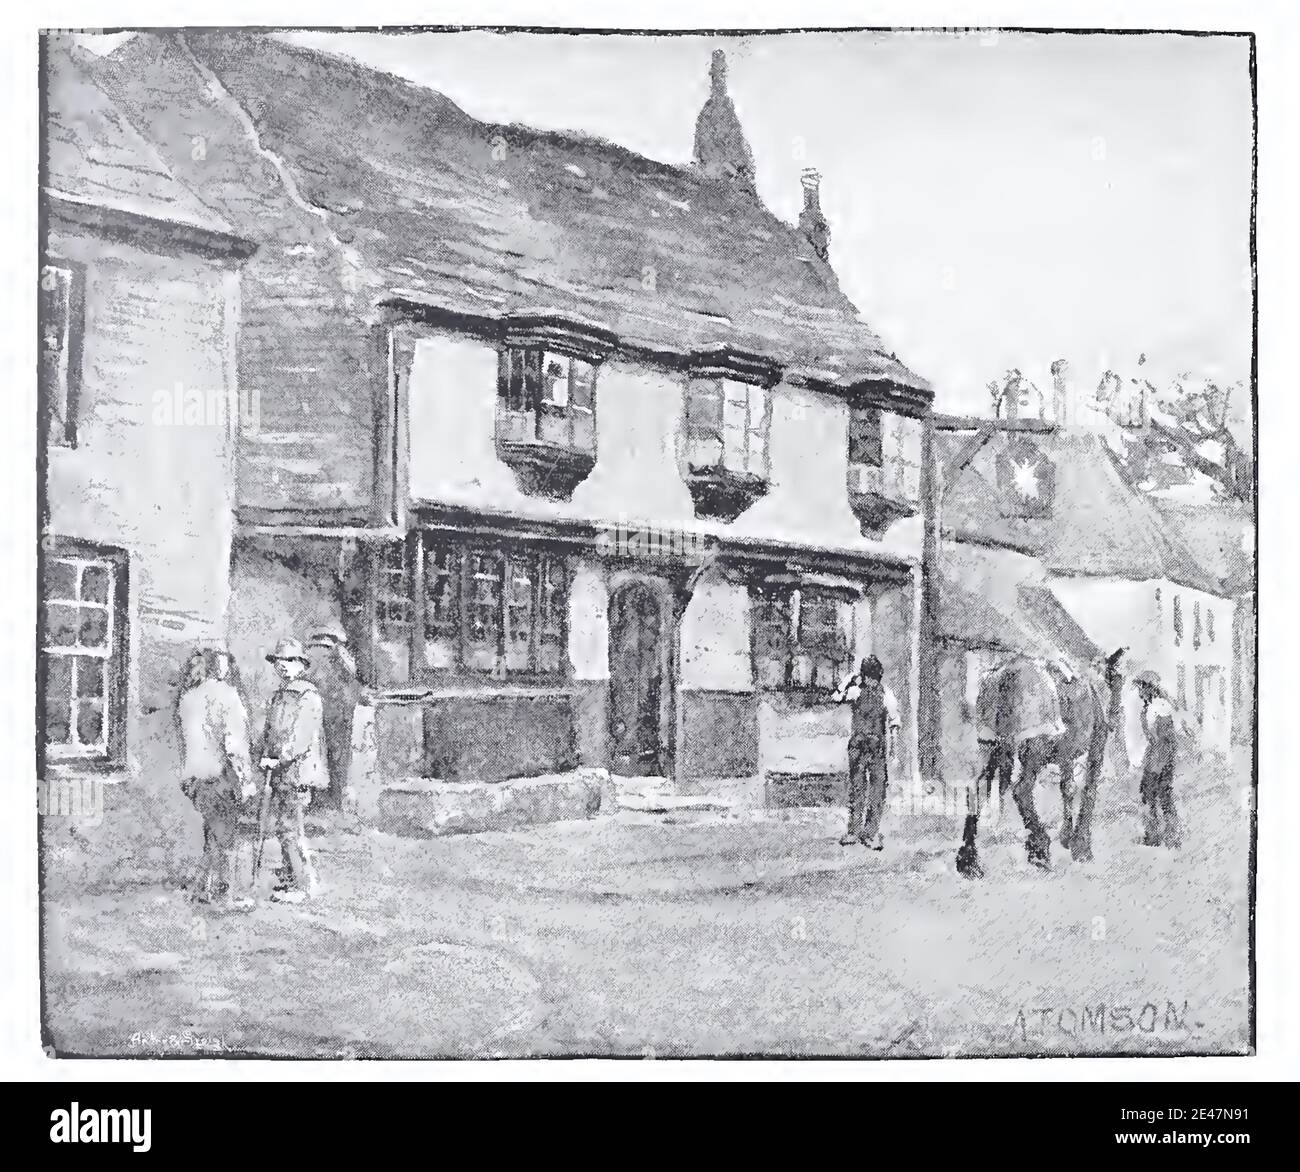 Illustrazione d'epoca di Arthur Tomson dello Star Inn, Alfriston, East Sussex, Inghilterra. Immagine tradizionale di una vecchia casa pubblica inglese. Foto Stock